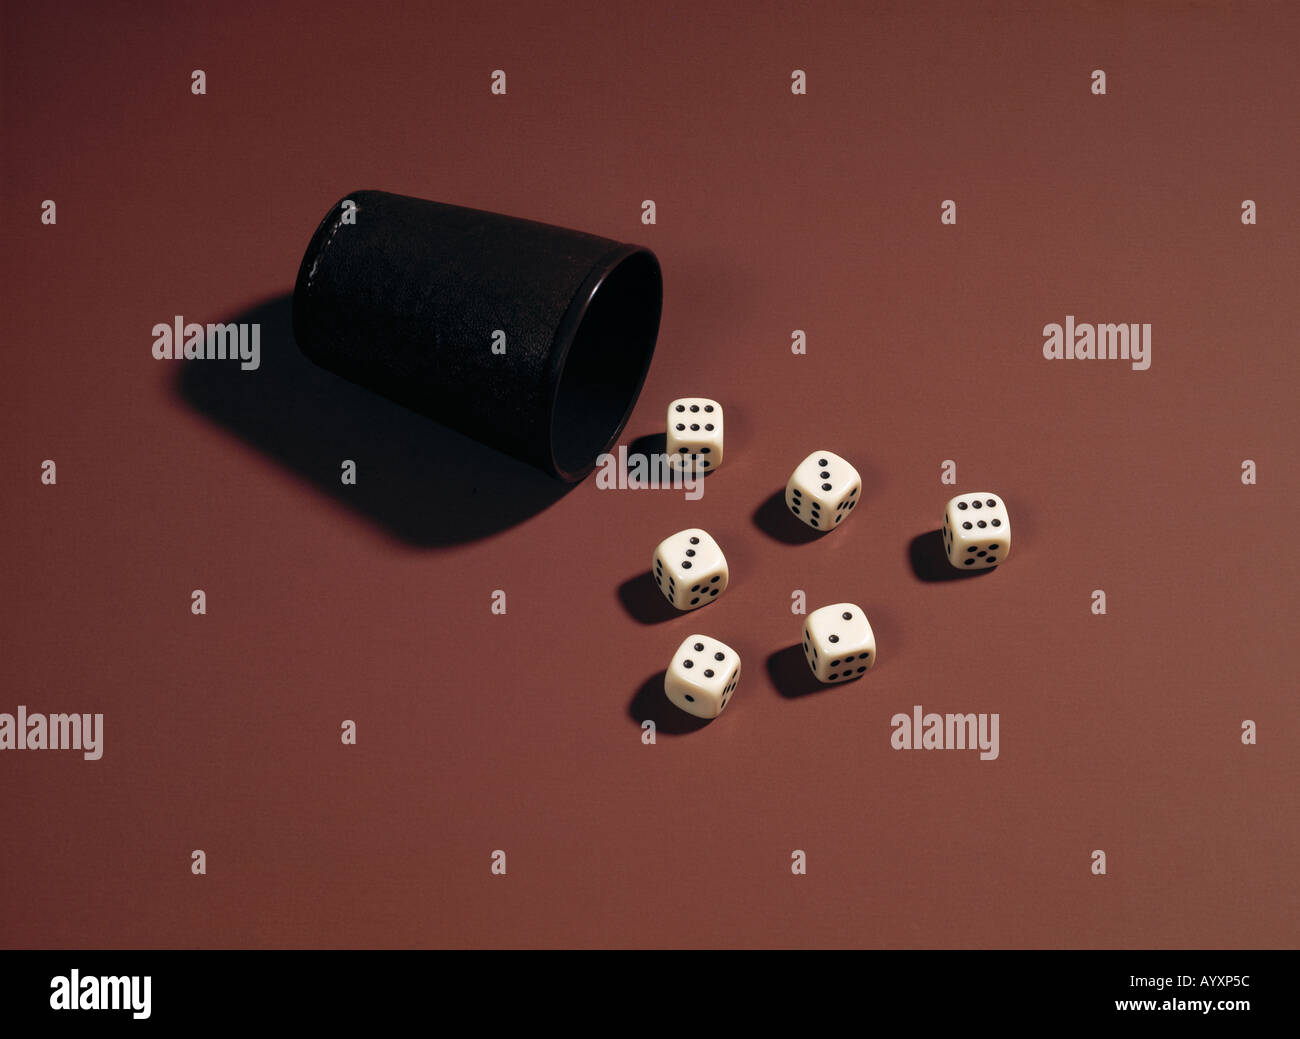 dice-box, dies Stock Photo